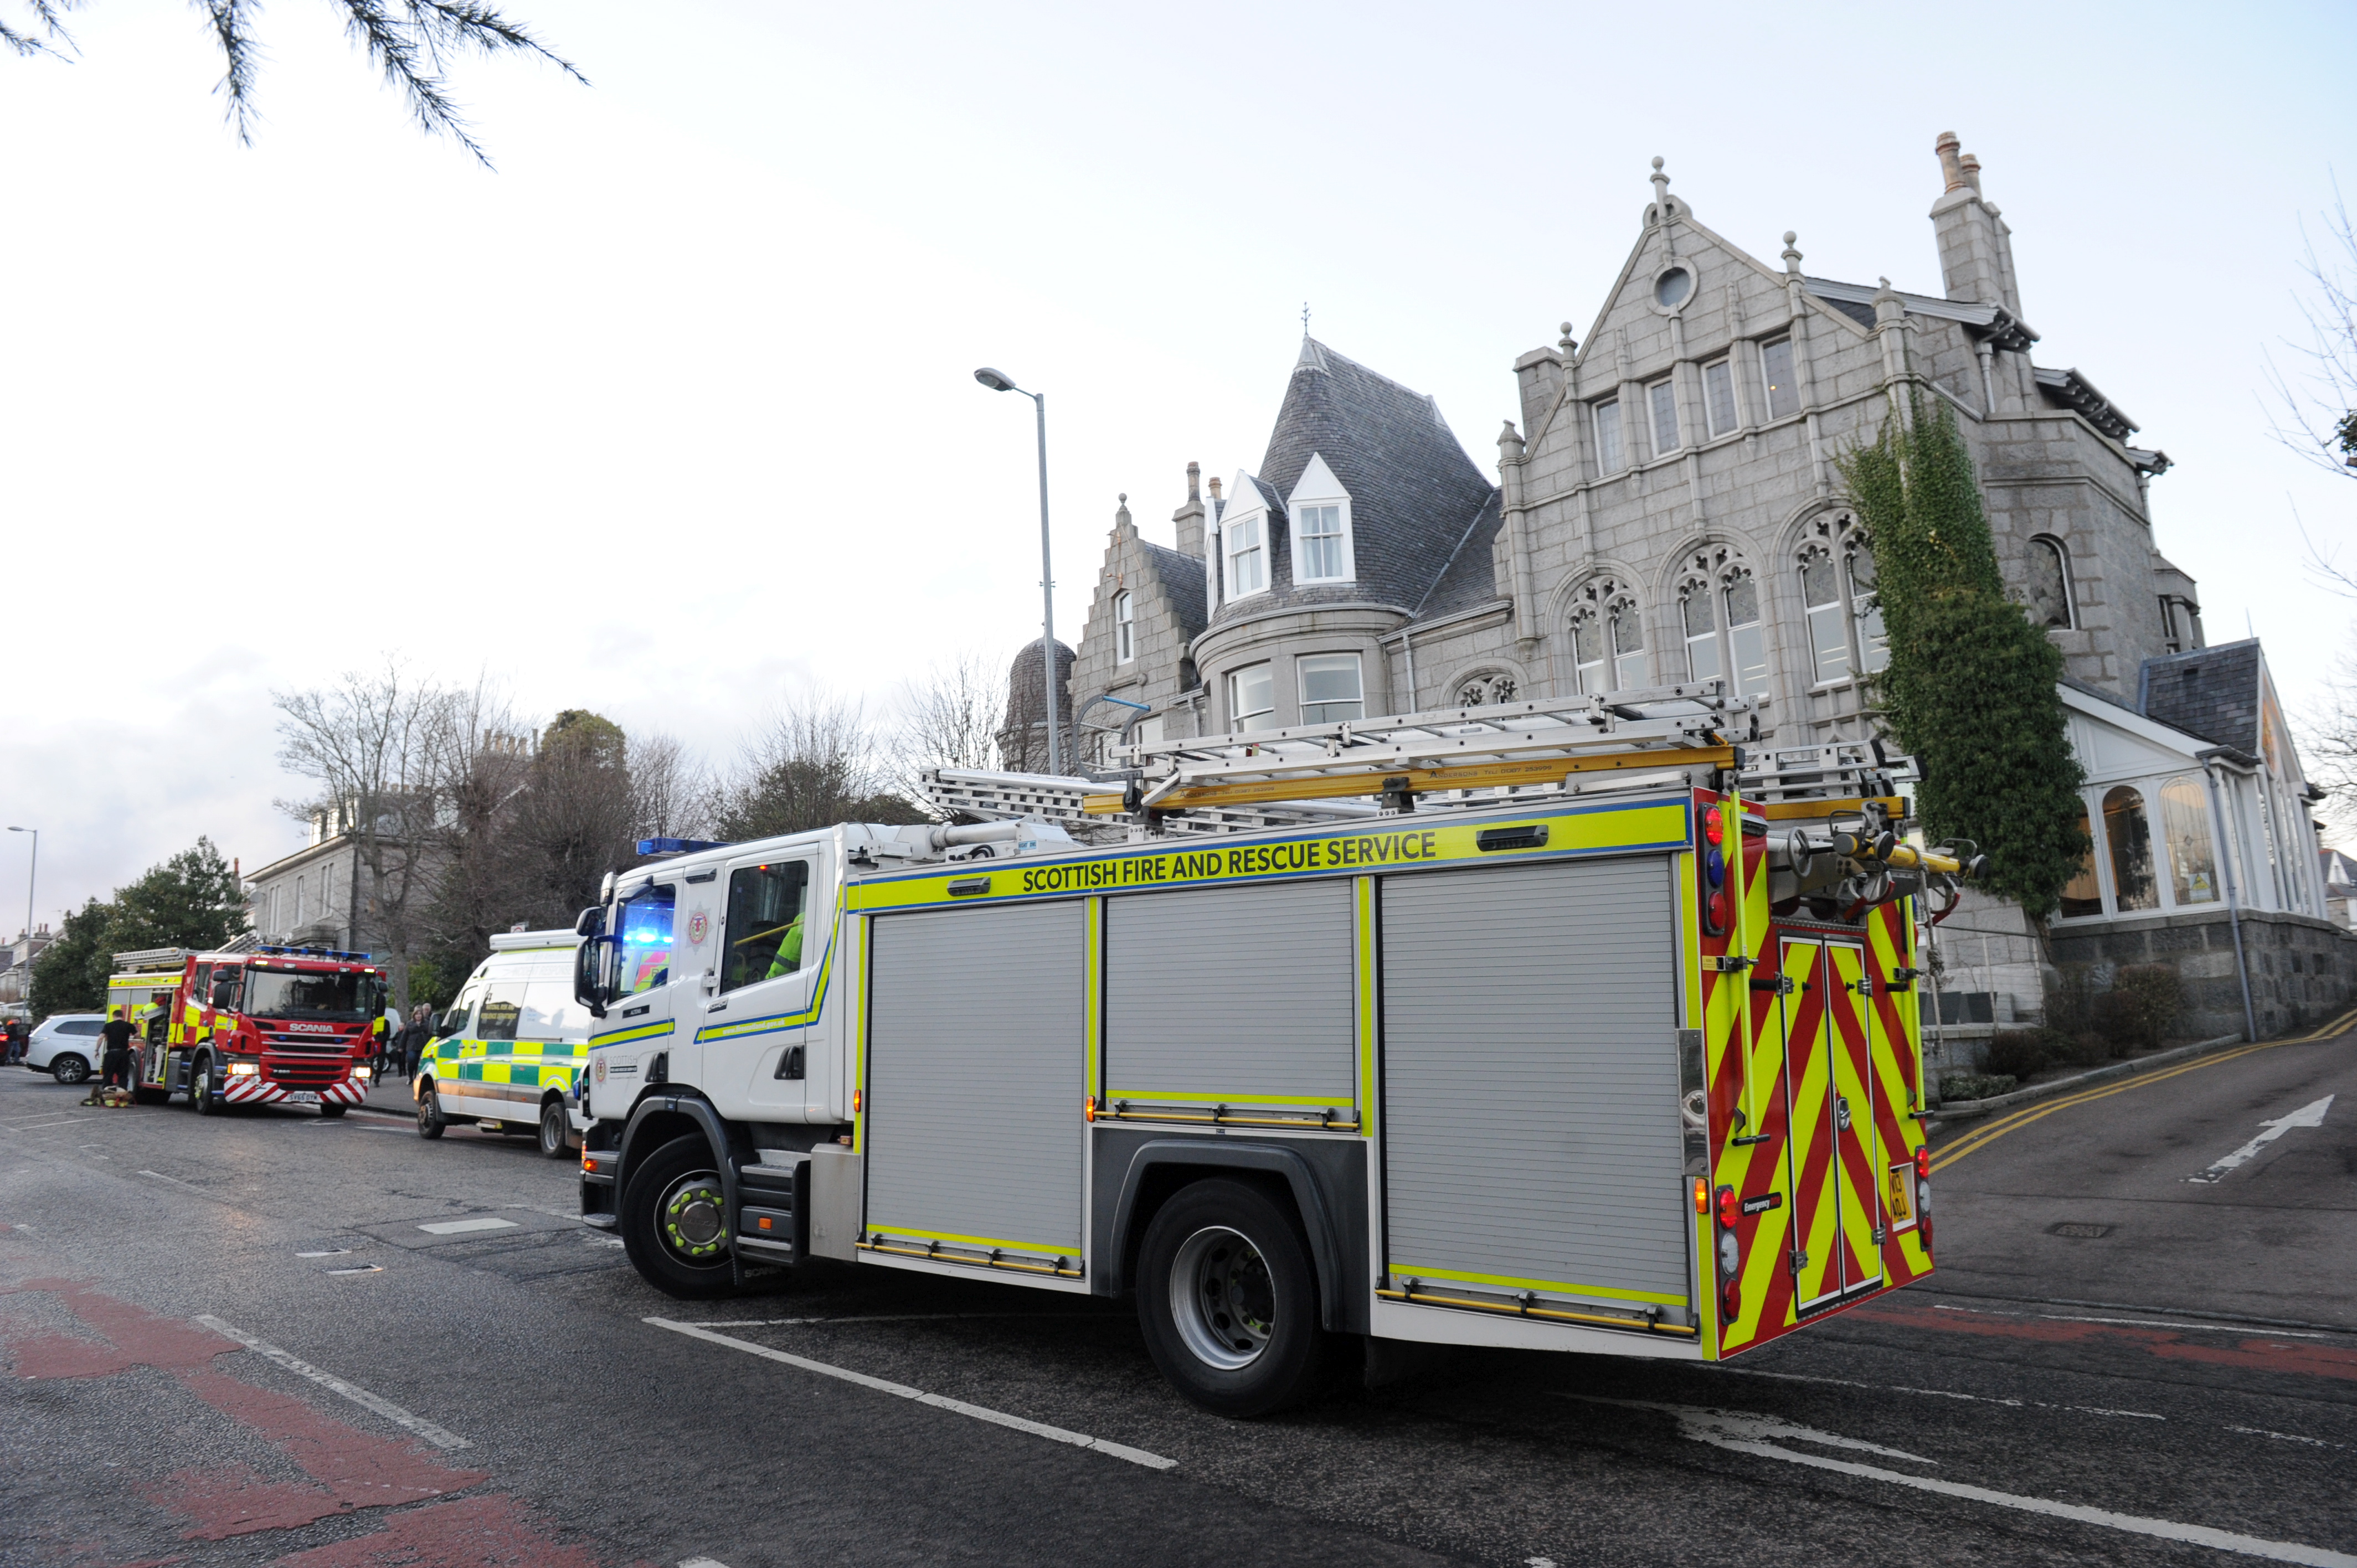 Scottish Fire and Rescue Service were on the scene.